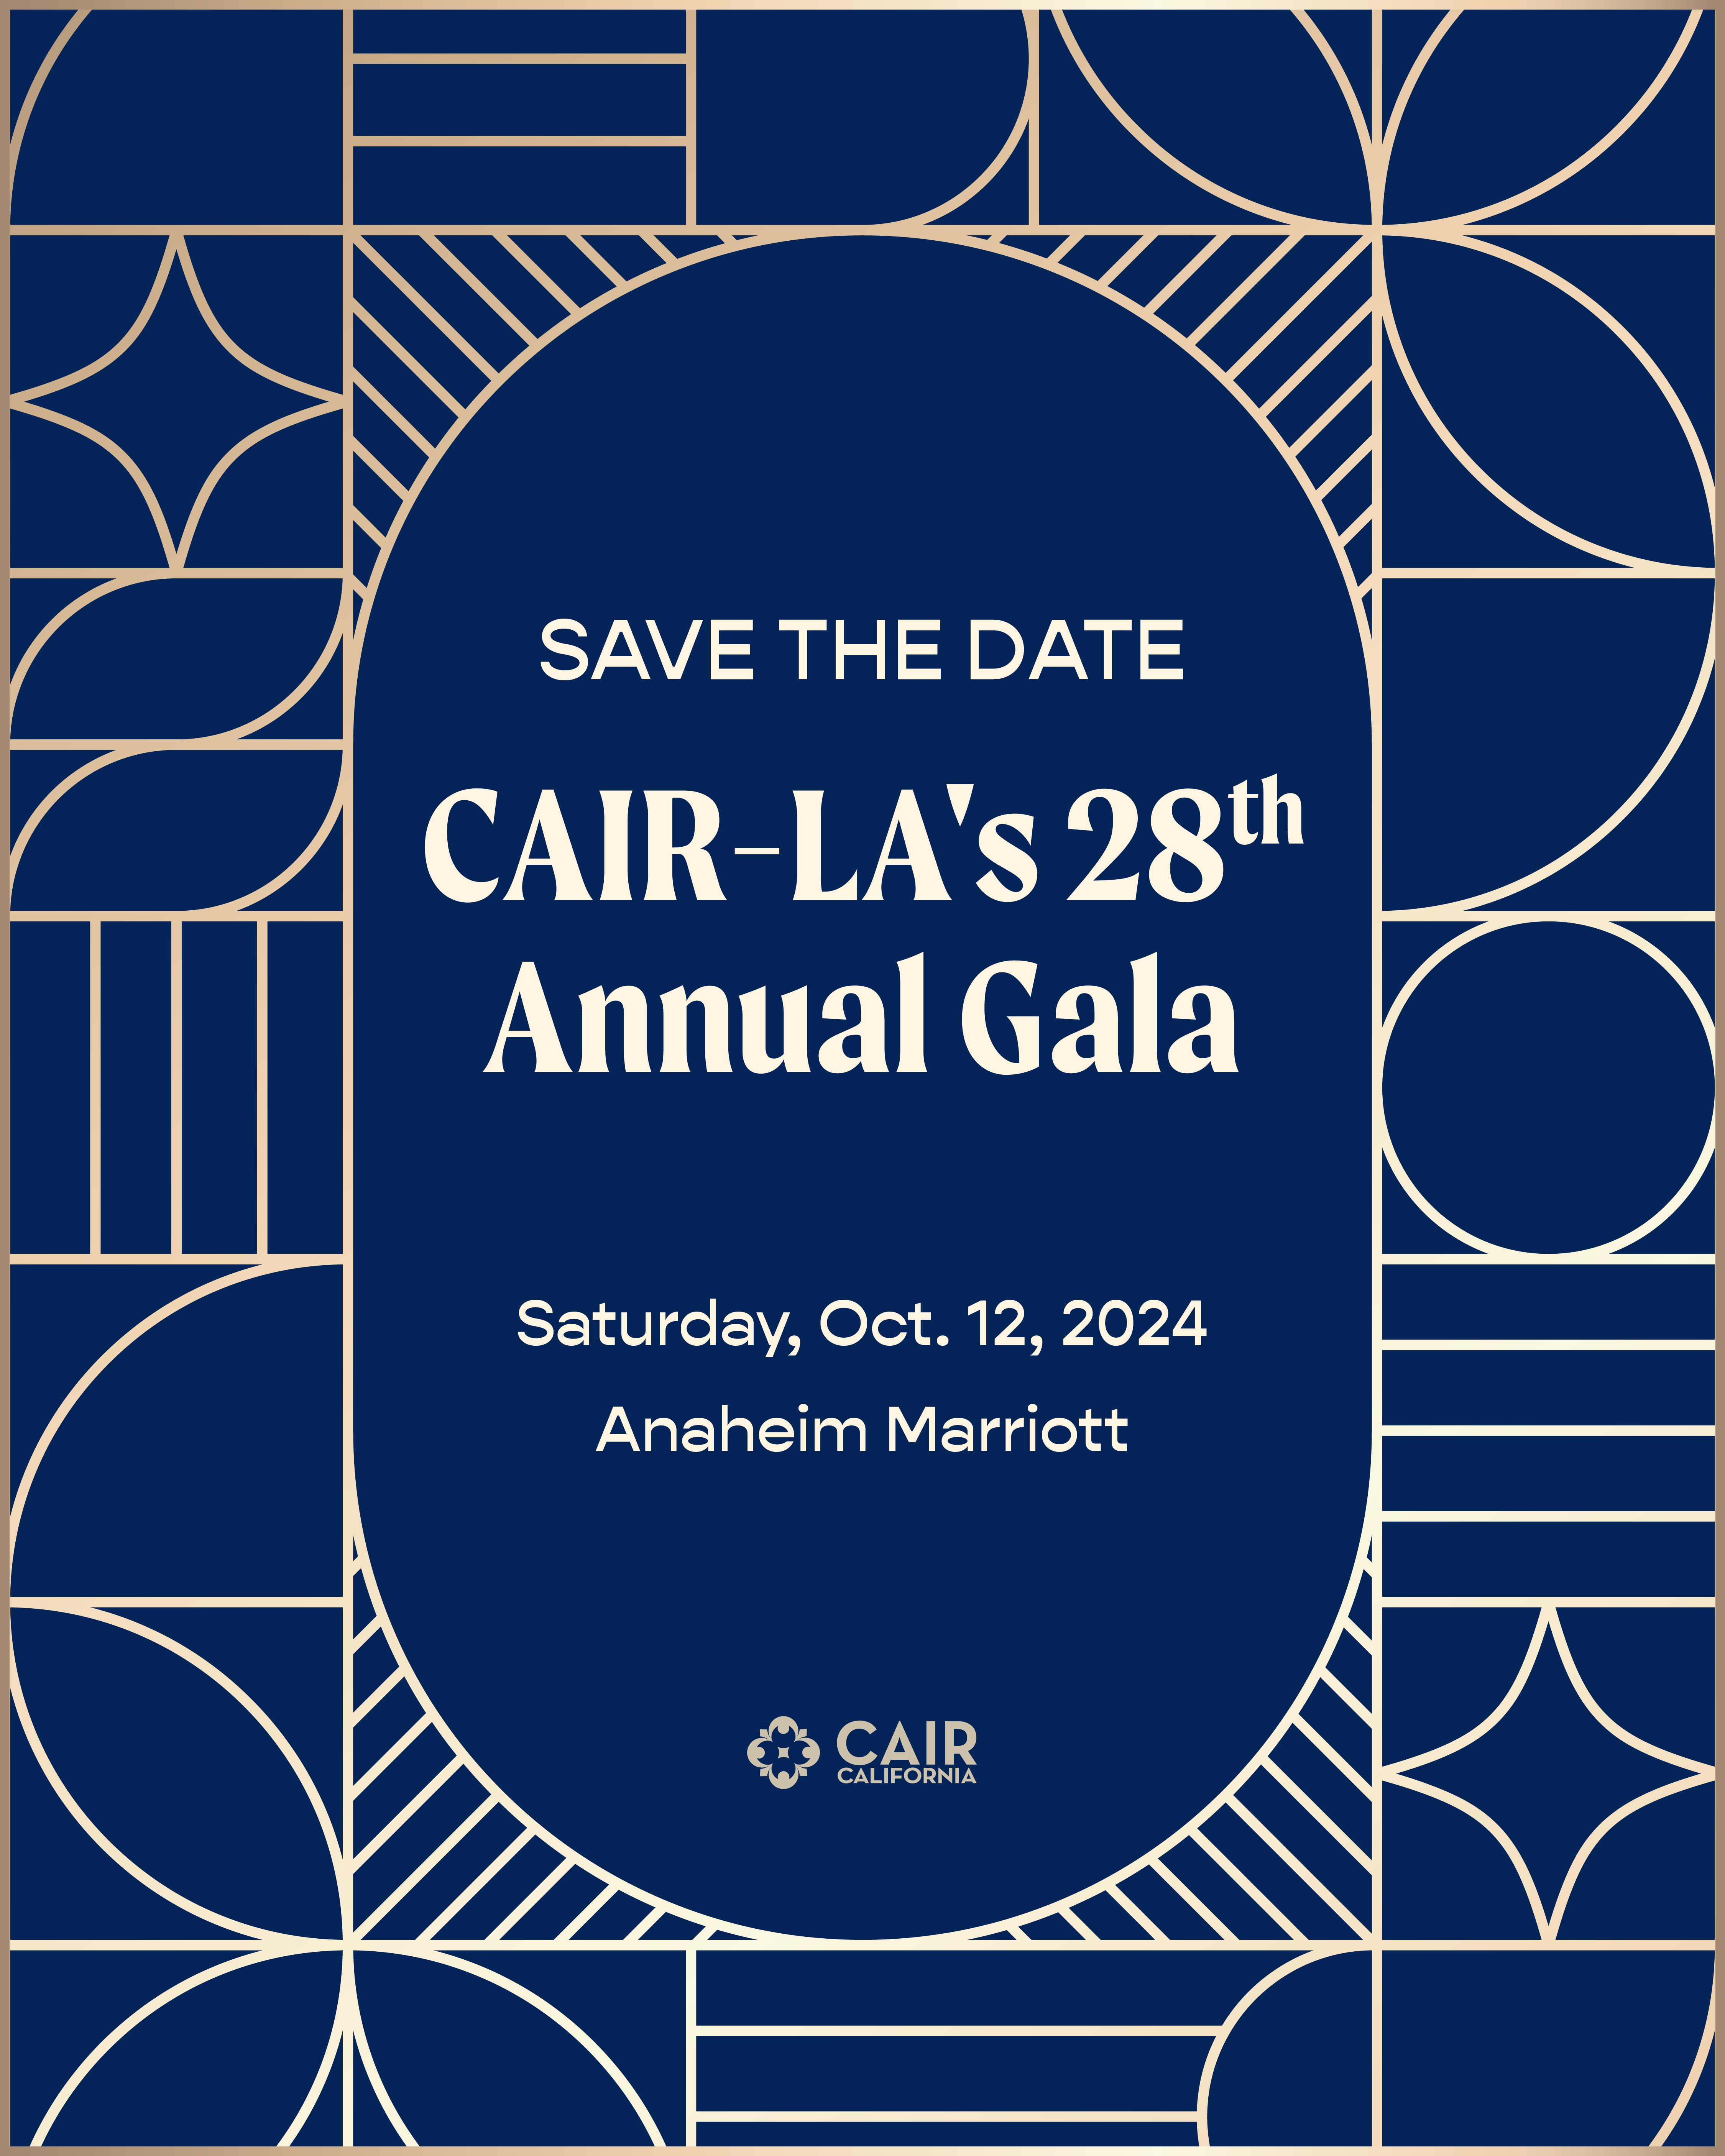 CAIR-LA 28th Annual Gala